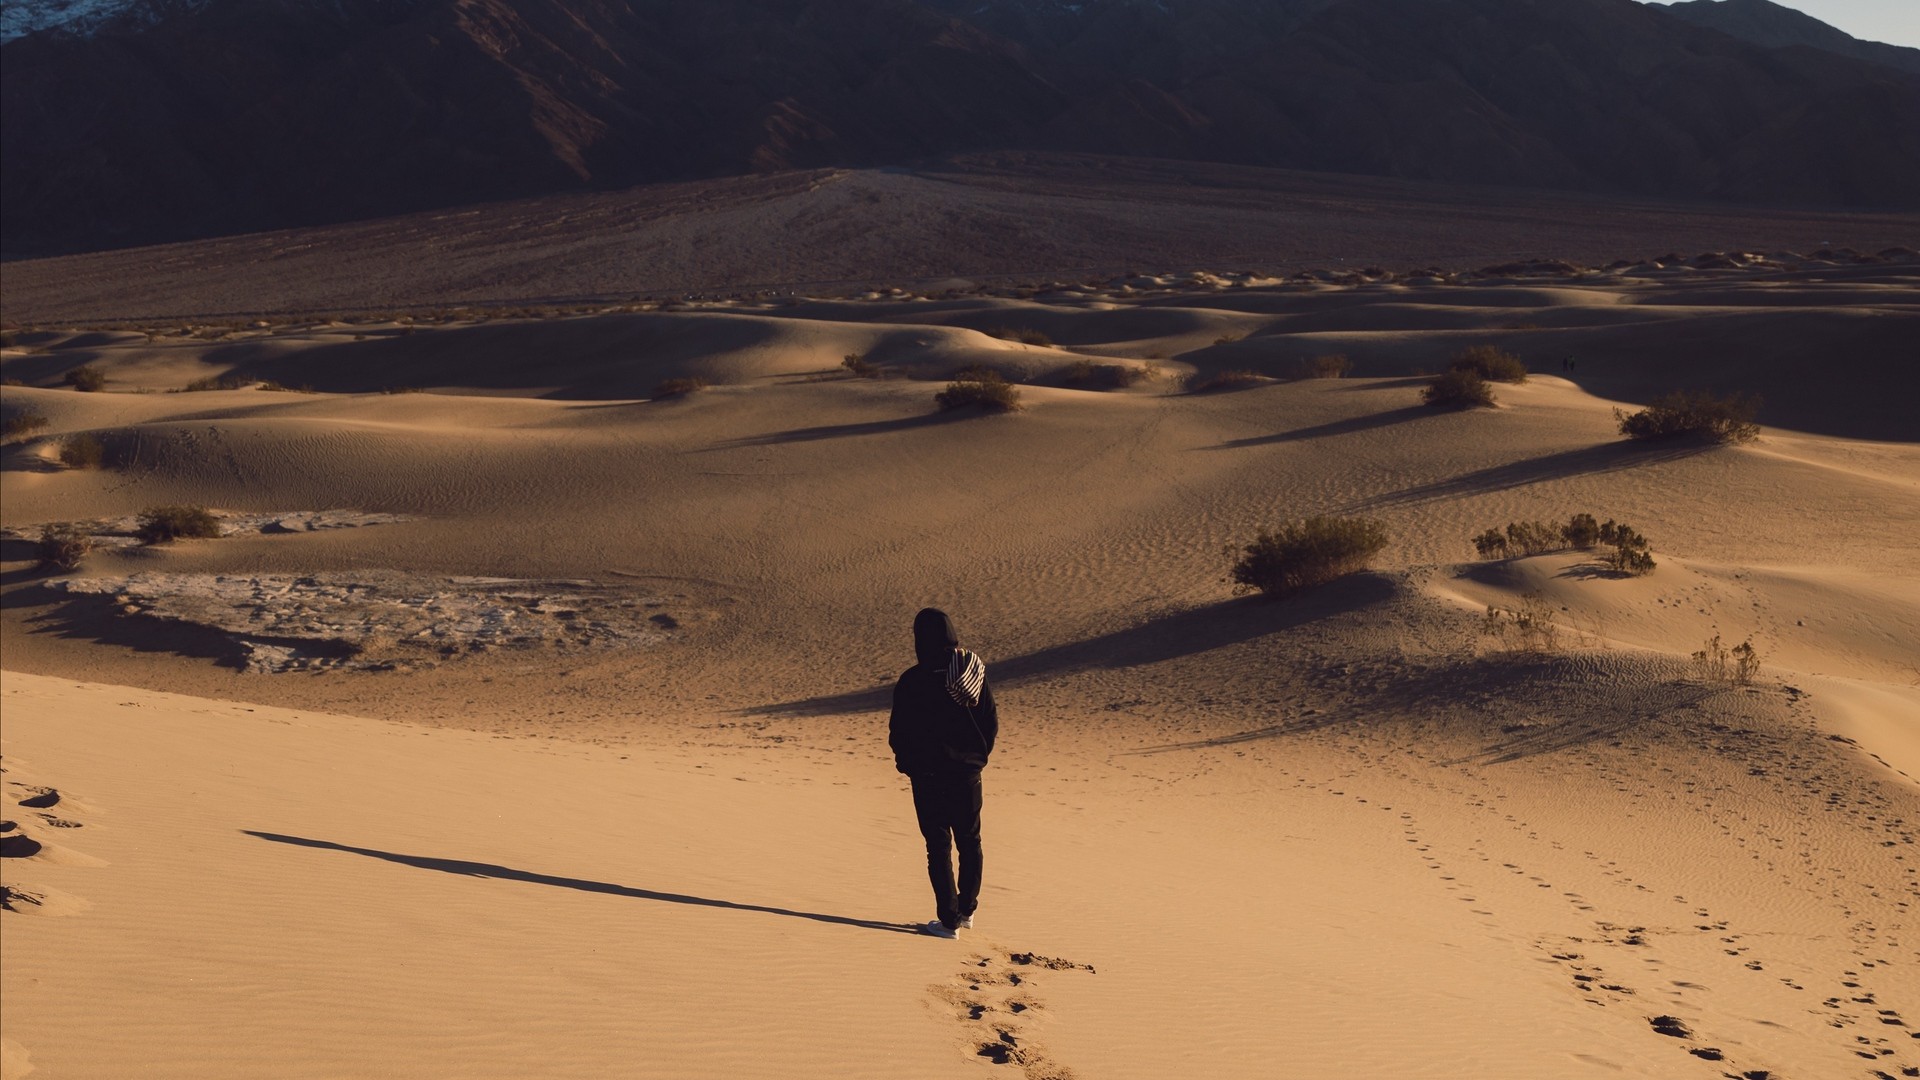 砂漠 孤独 孤独 砂 痕跡 写真 写真 デスクトップ壁紙